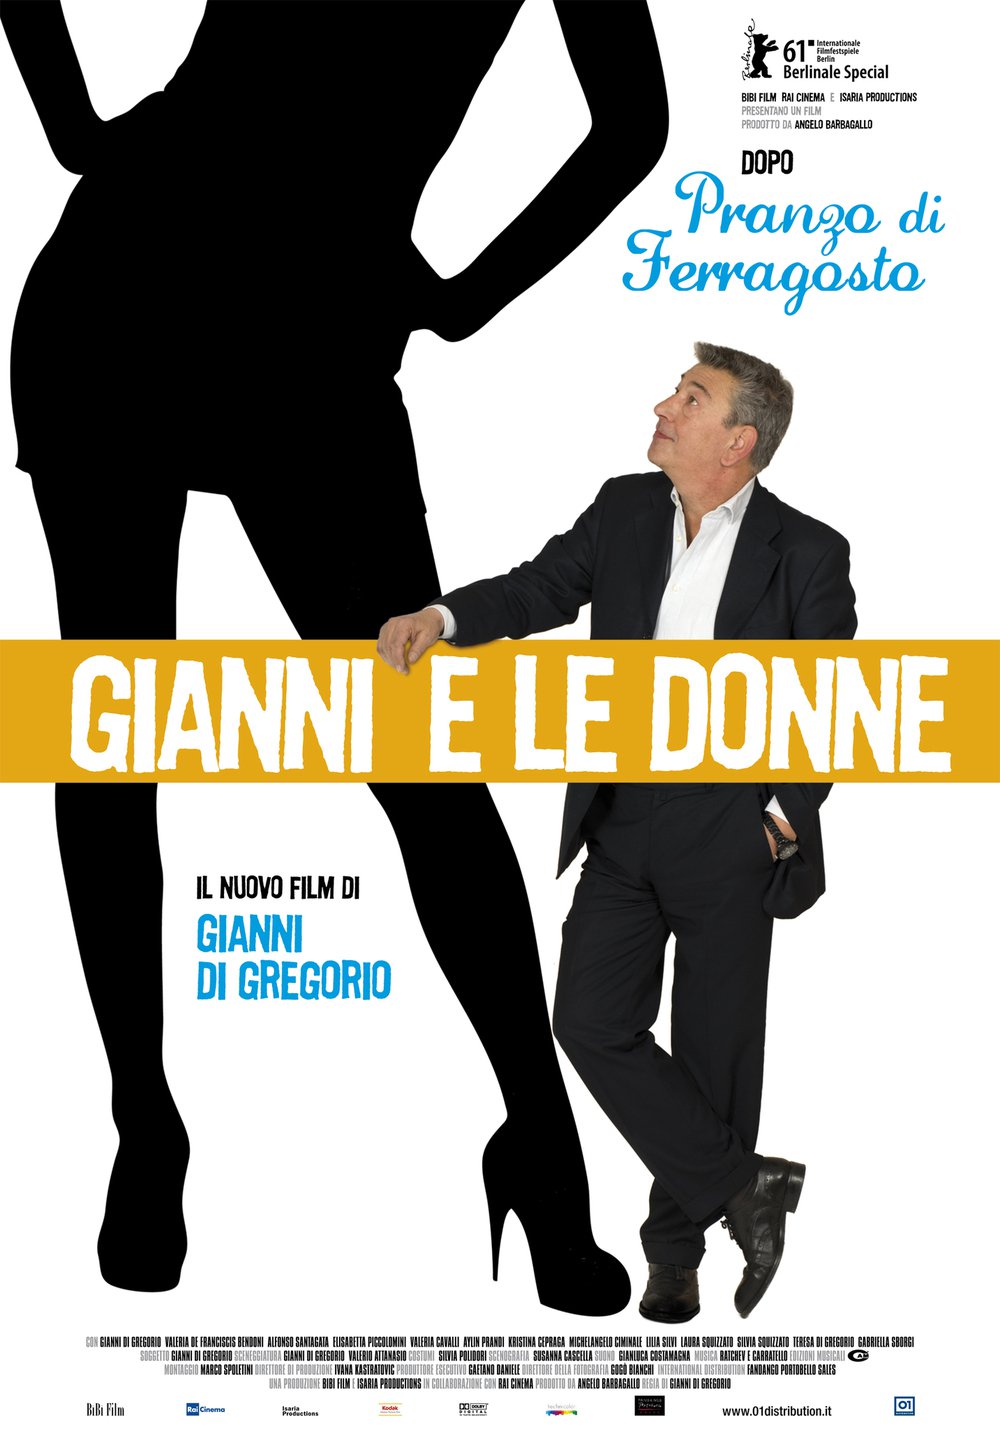 Gianni e le Donne - still